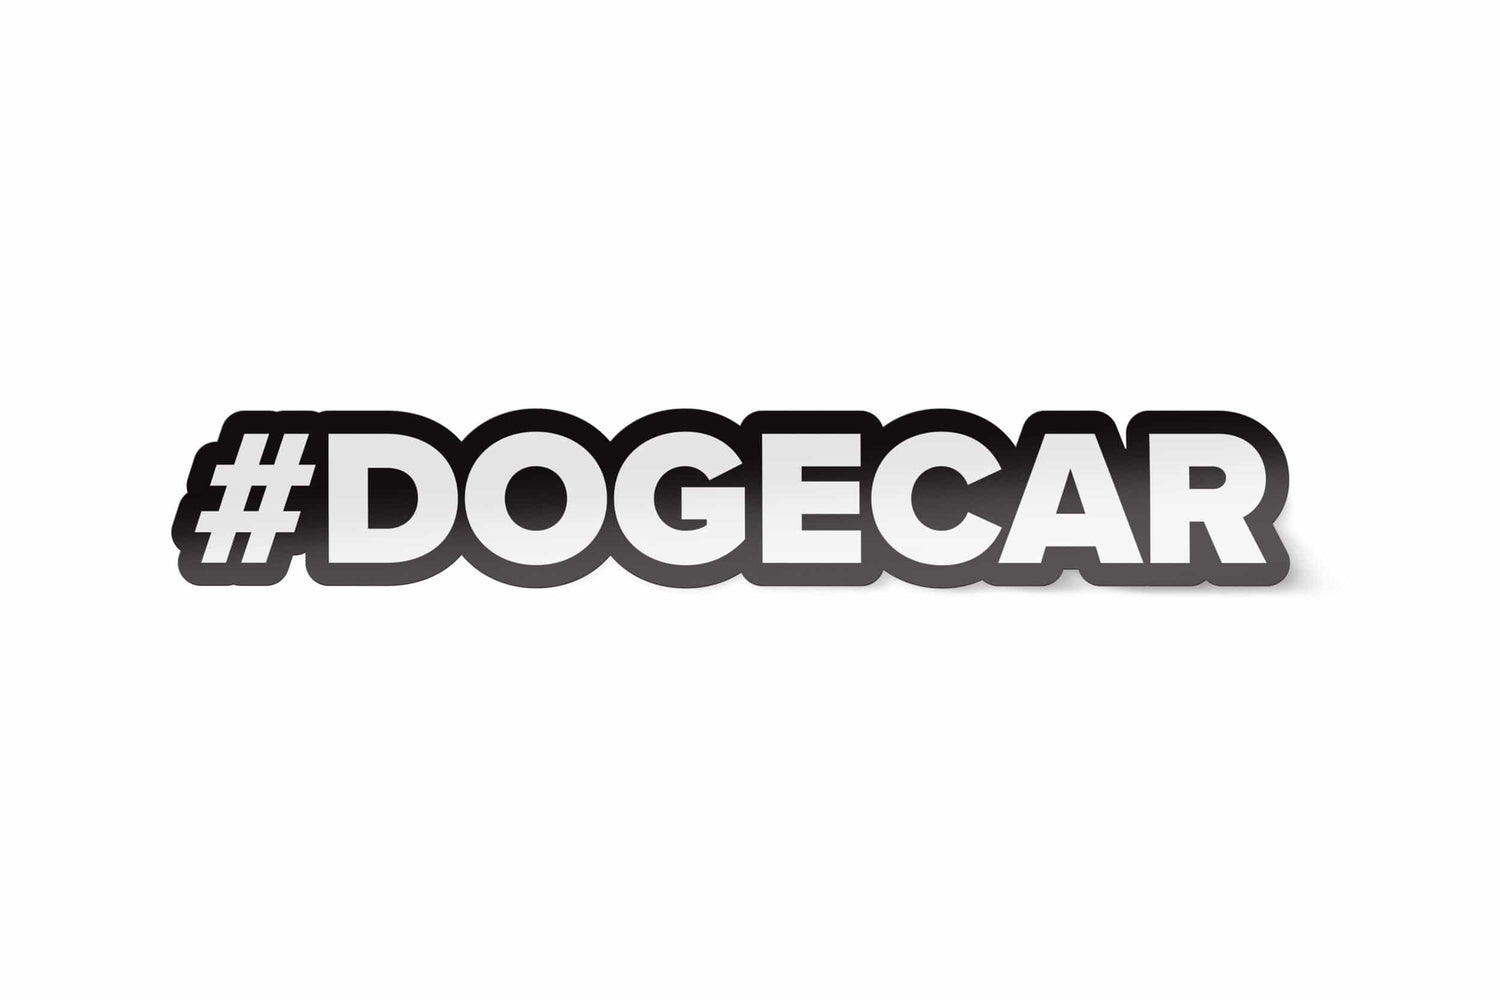 DOGECAR 'Hashtag' Sticker - Black/White DO-ST-02